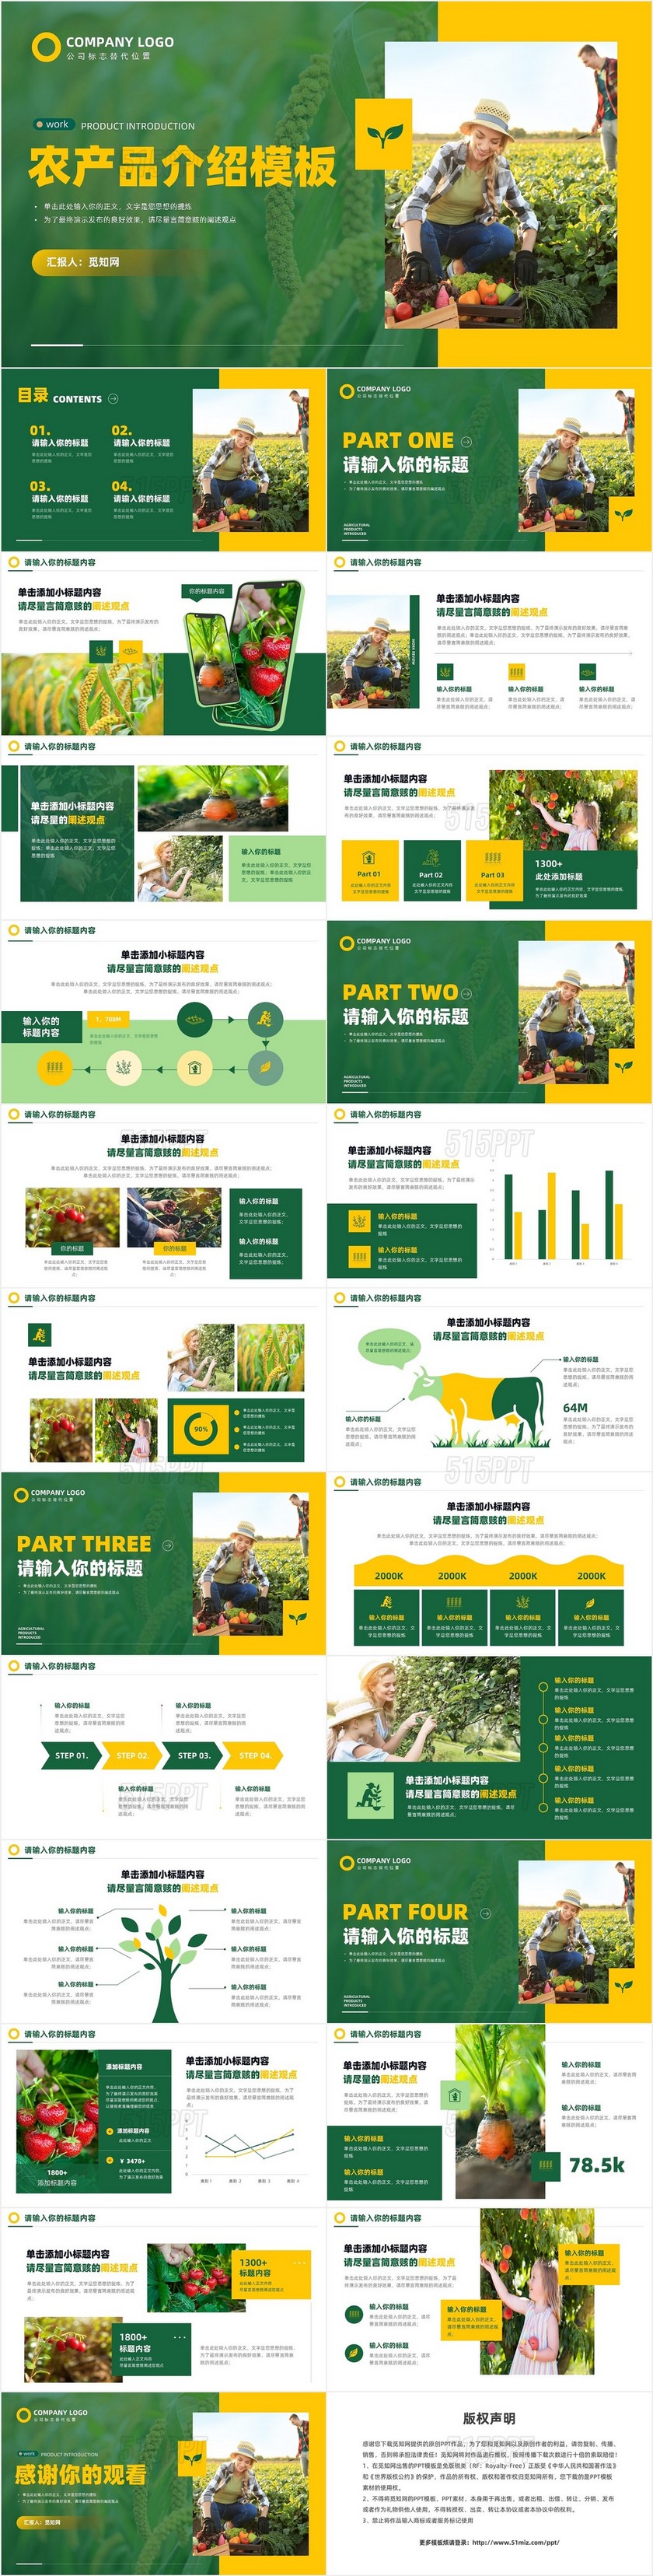 绿色农产品介绍推广营销宣传PPT模板